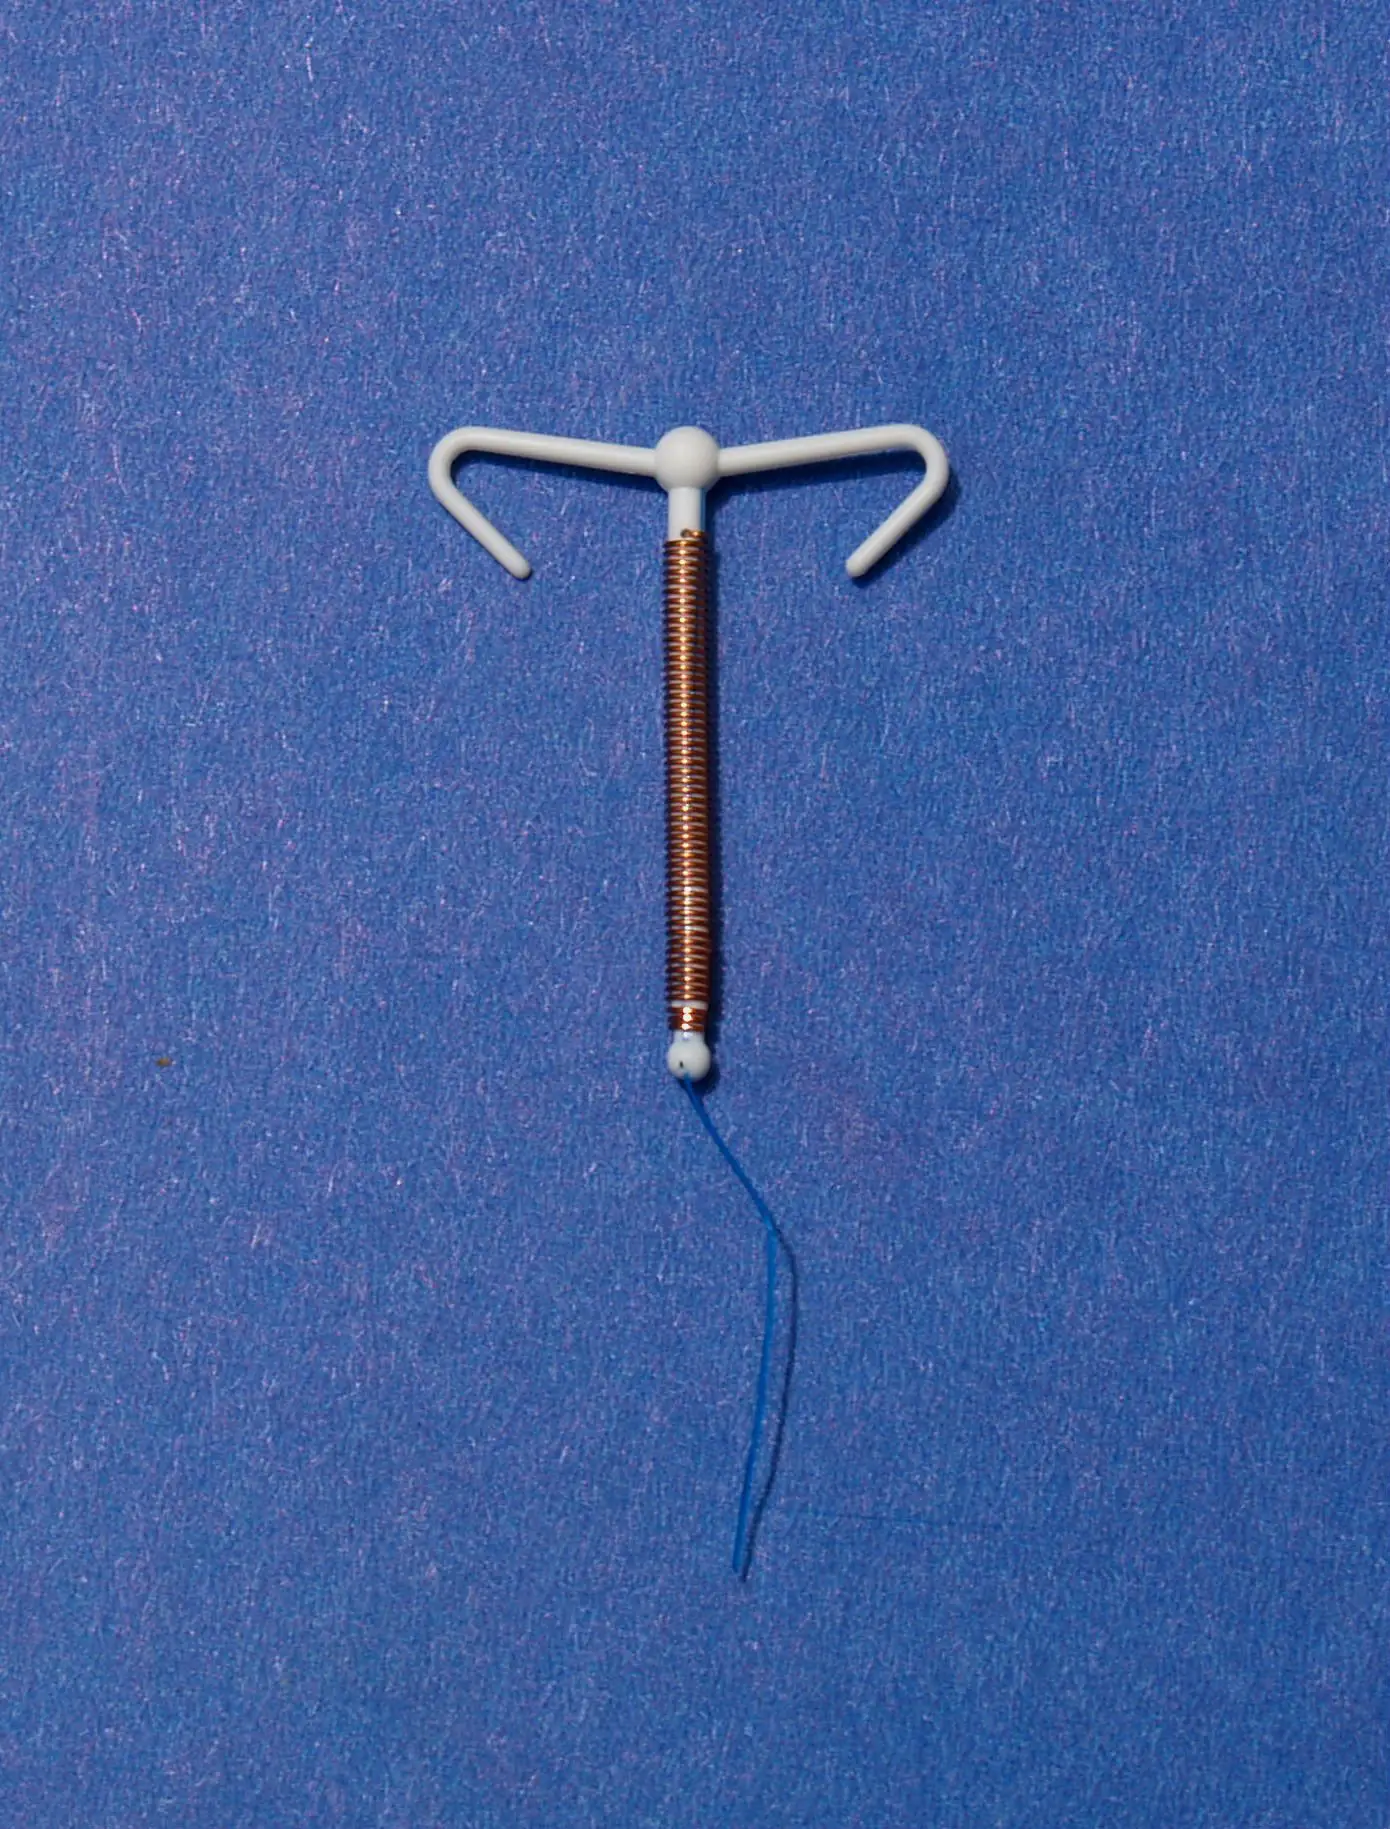 Copper IUDs